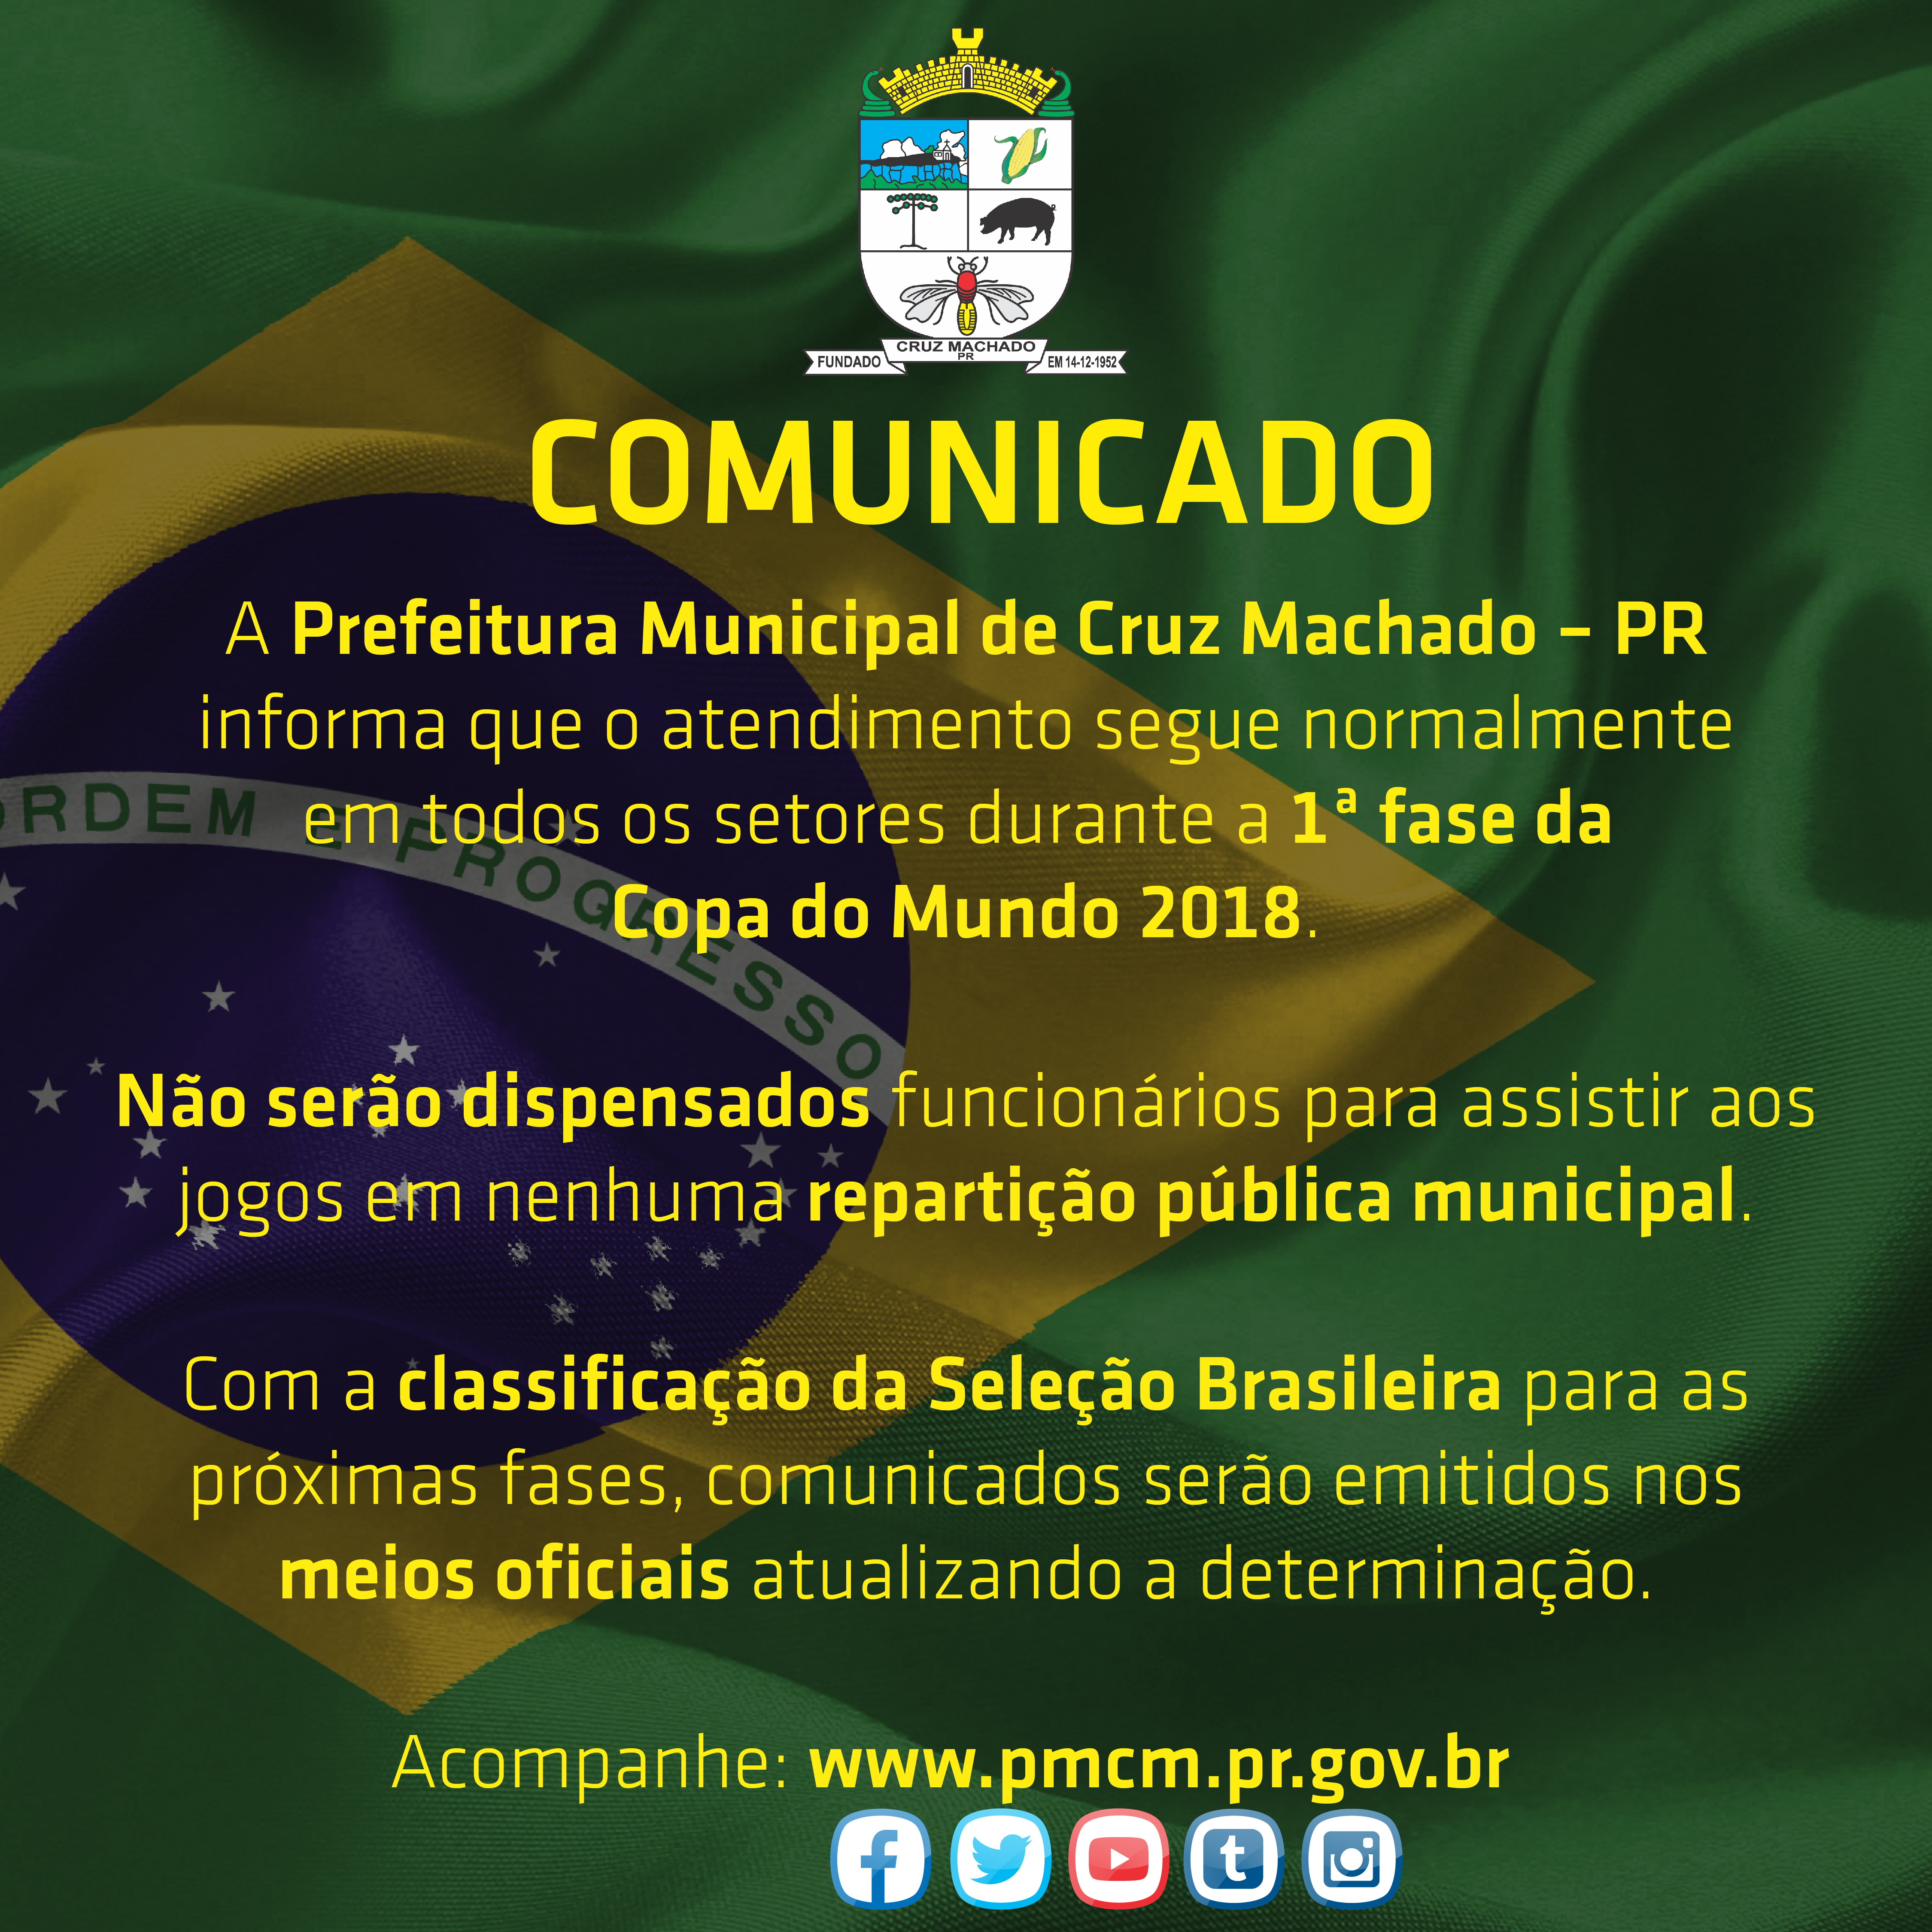 Comunicado sobre o expediente durante o jogo do Brasil na Copa do Mundo